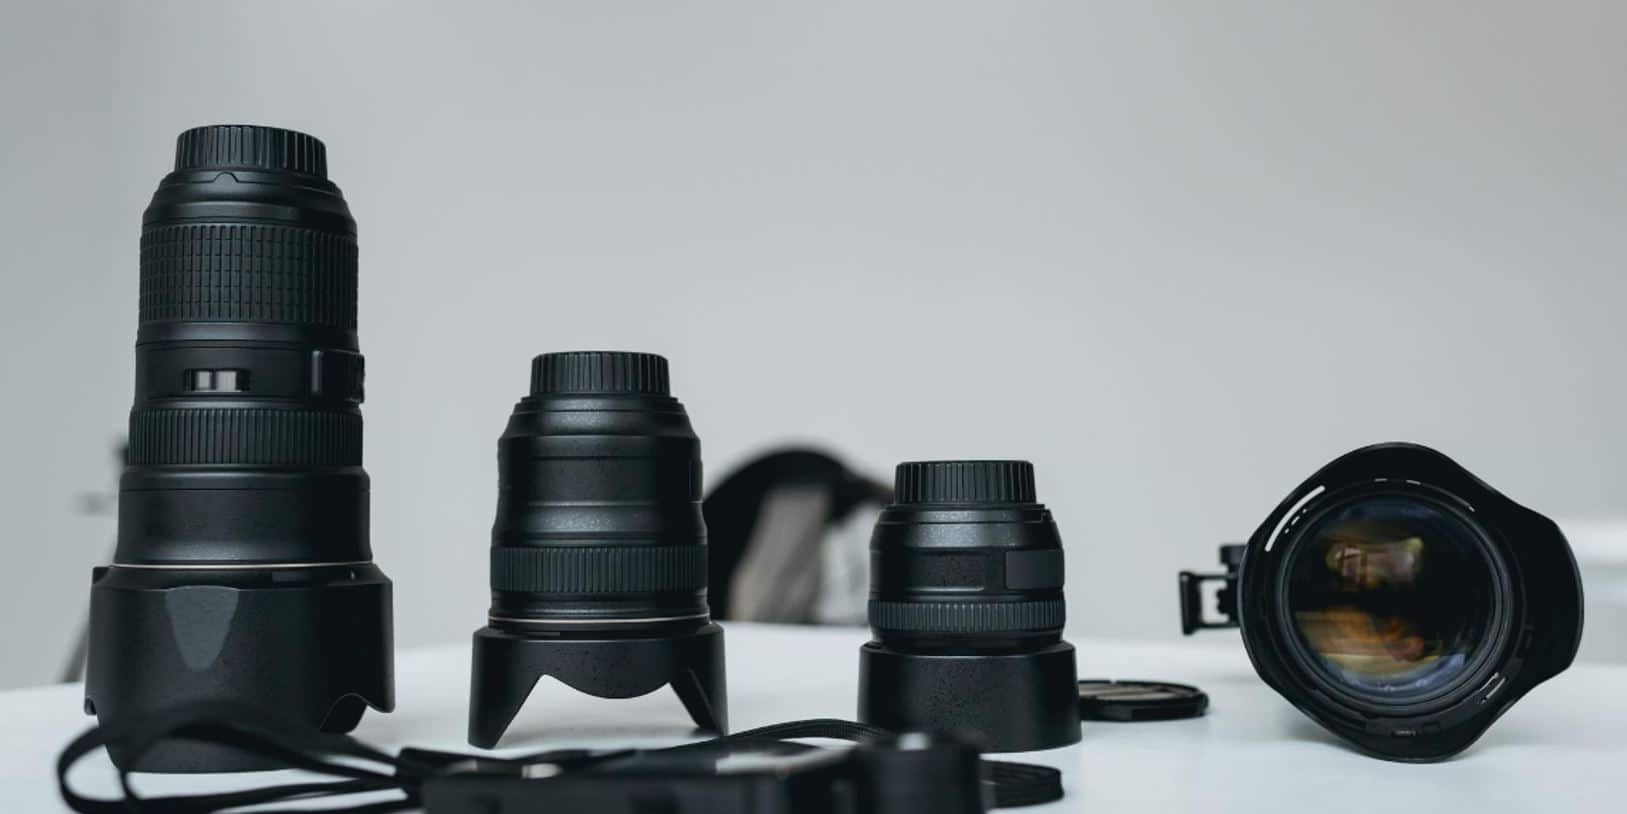 niche site ideas - camera lenses